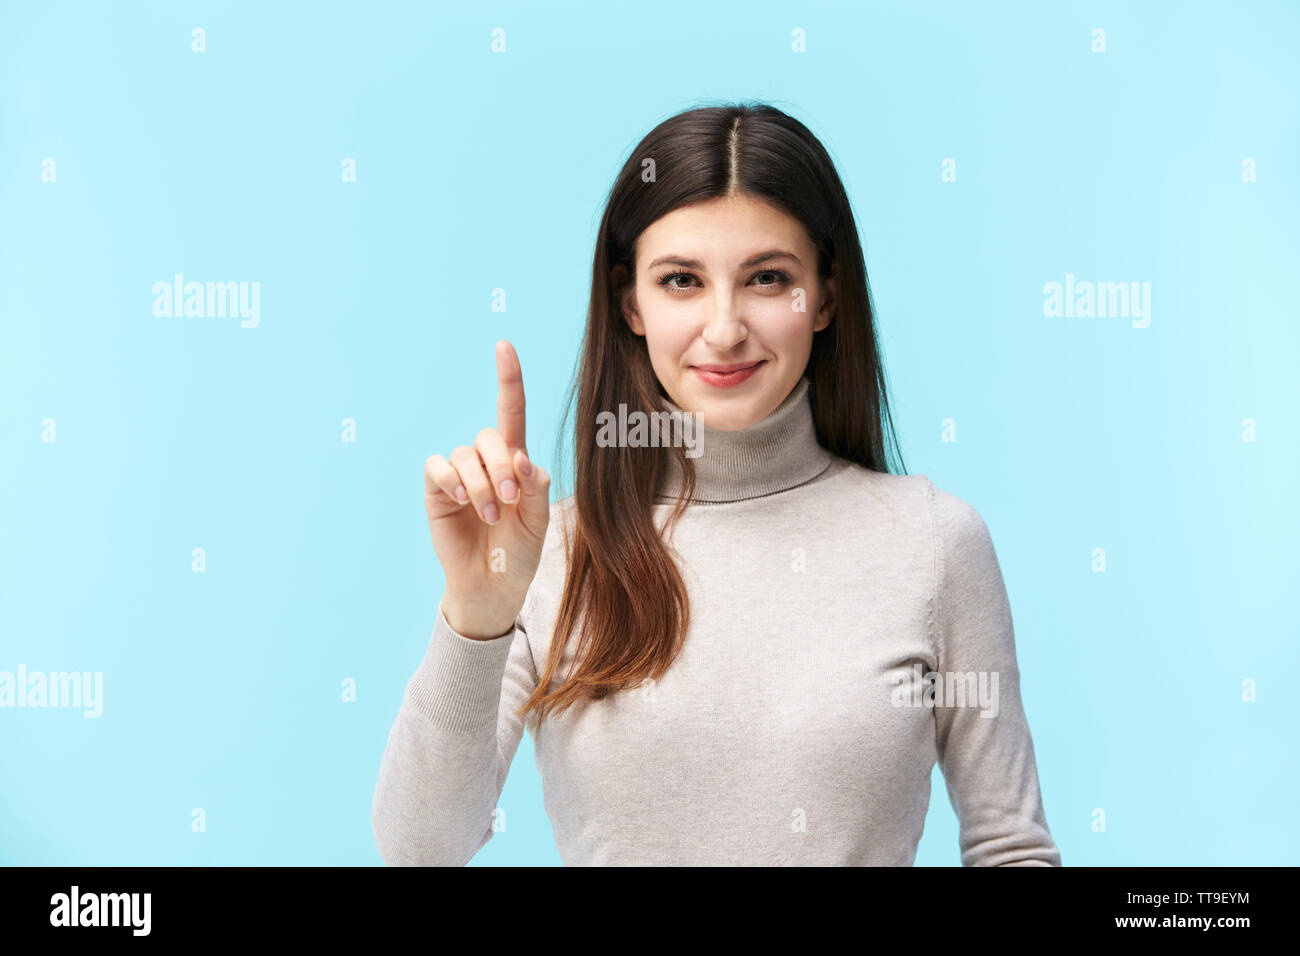 Schönen jungen kaukasischen Frau Drücken einer virtuellen Button, in die Kamera lächeln suchen, auf blauem Hintergrund isoliert Stockfoto